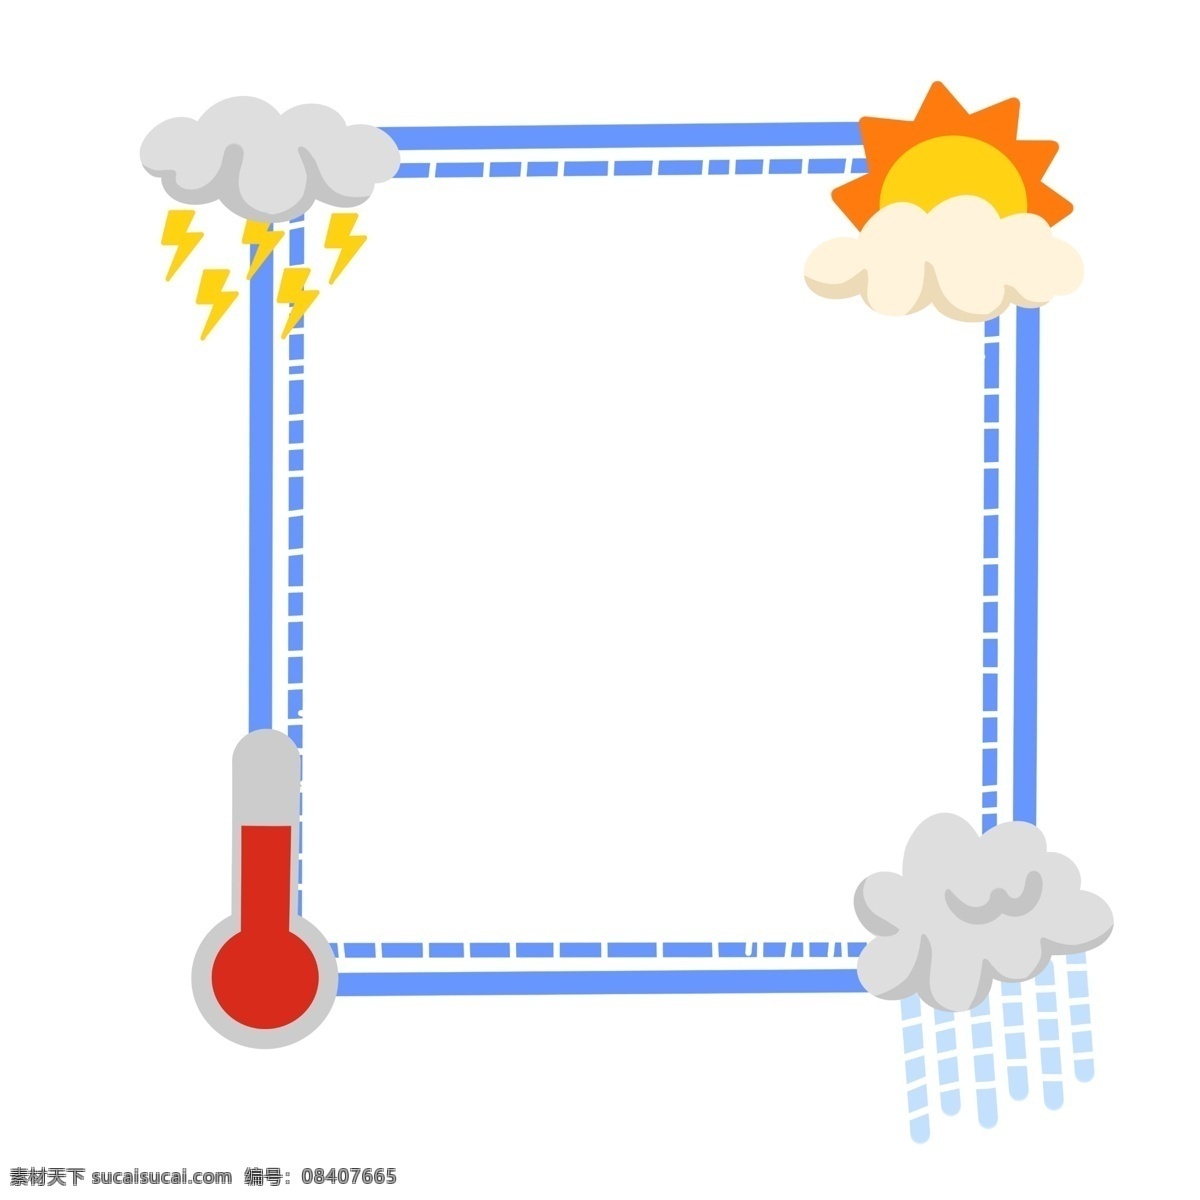 可爱 天气 卡通 边框 可爱的天气 雷阵雨 高温 太阳 晴天 下雨天 卡通边框 蓝色方框 边框纹理 虚实线